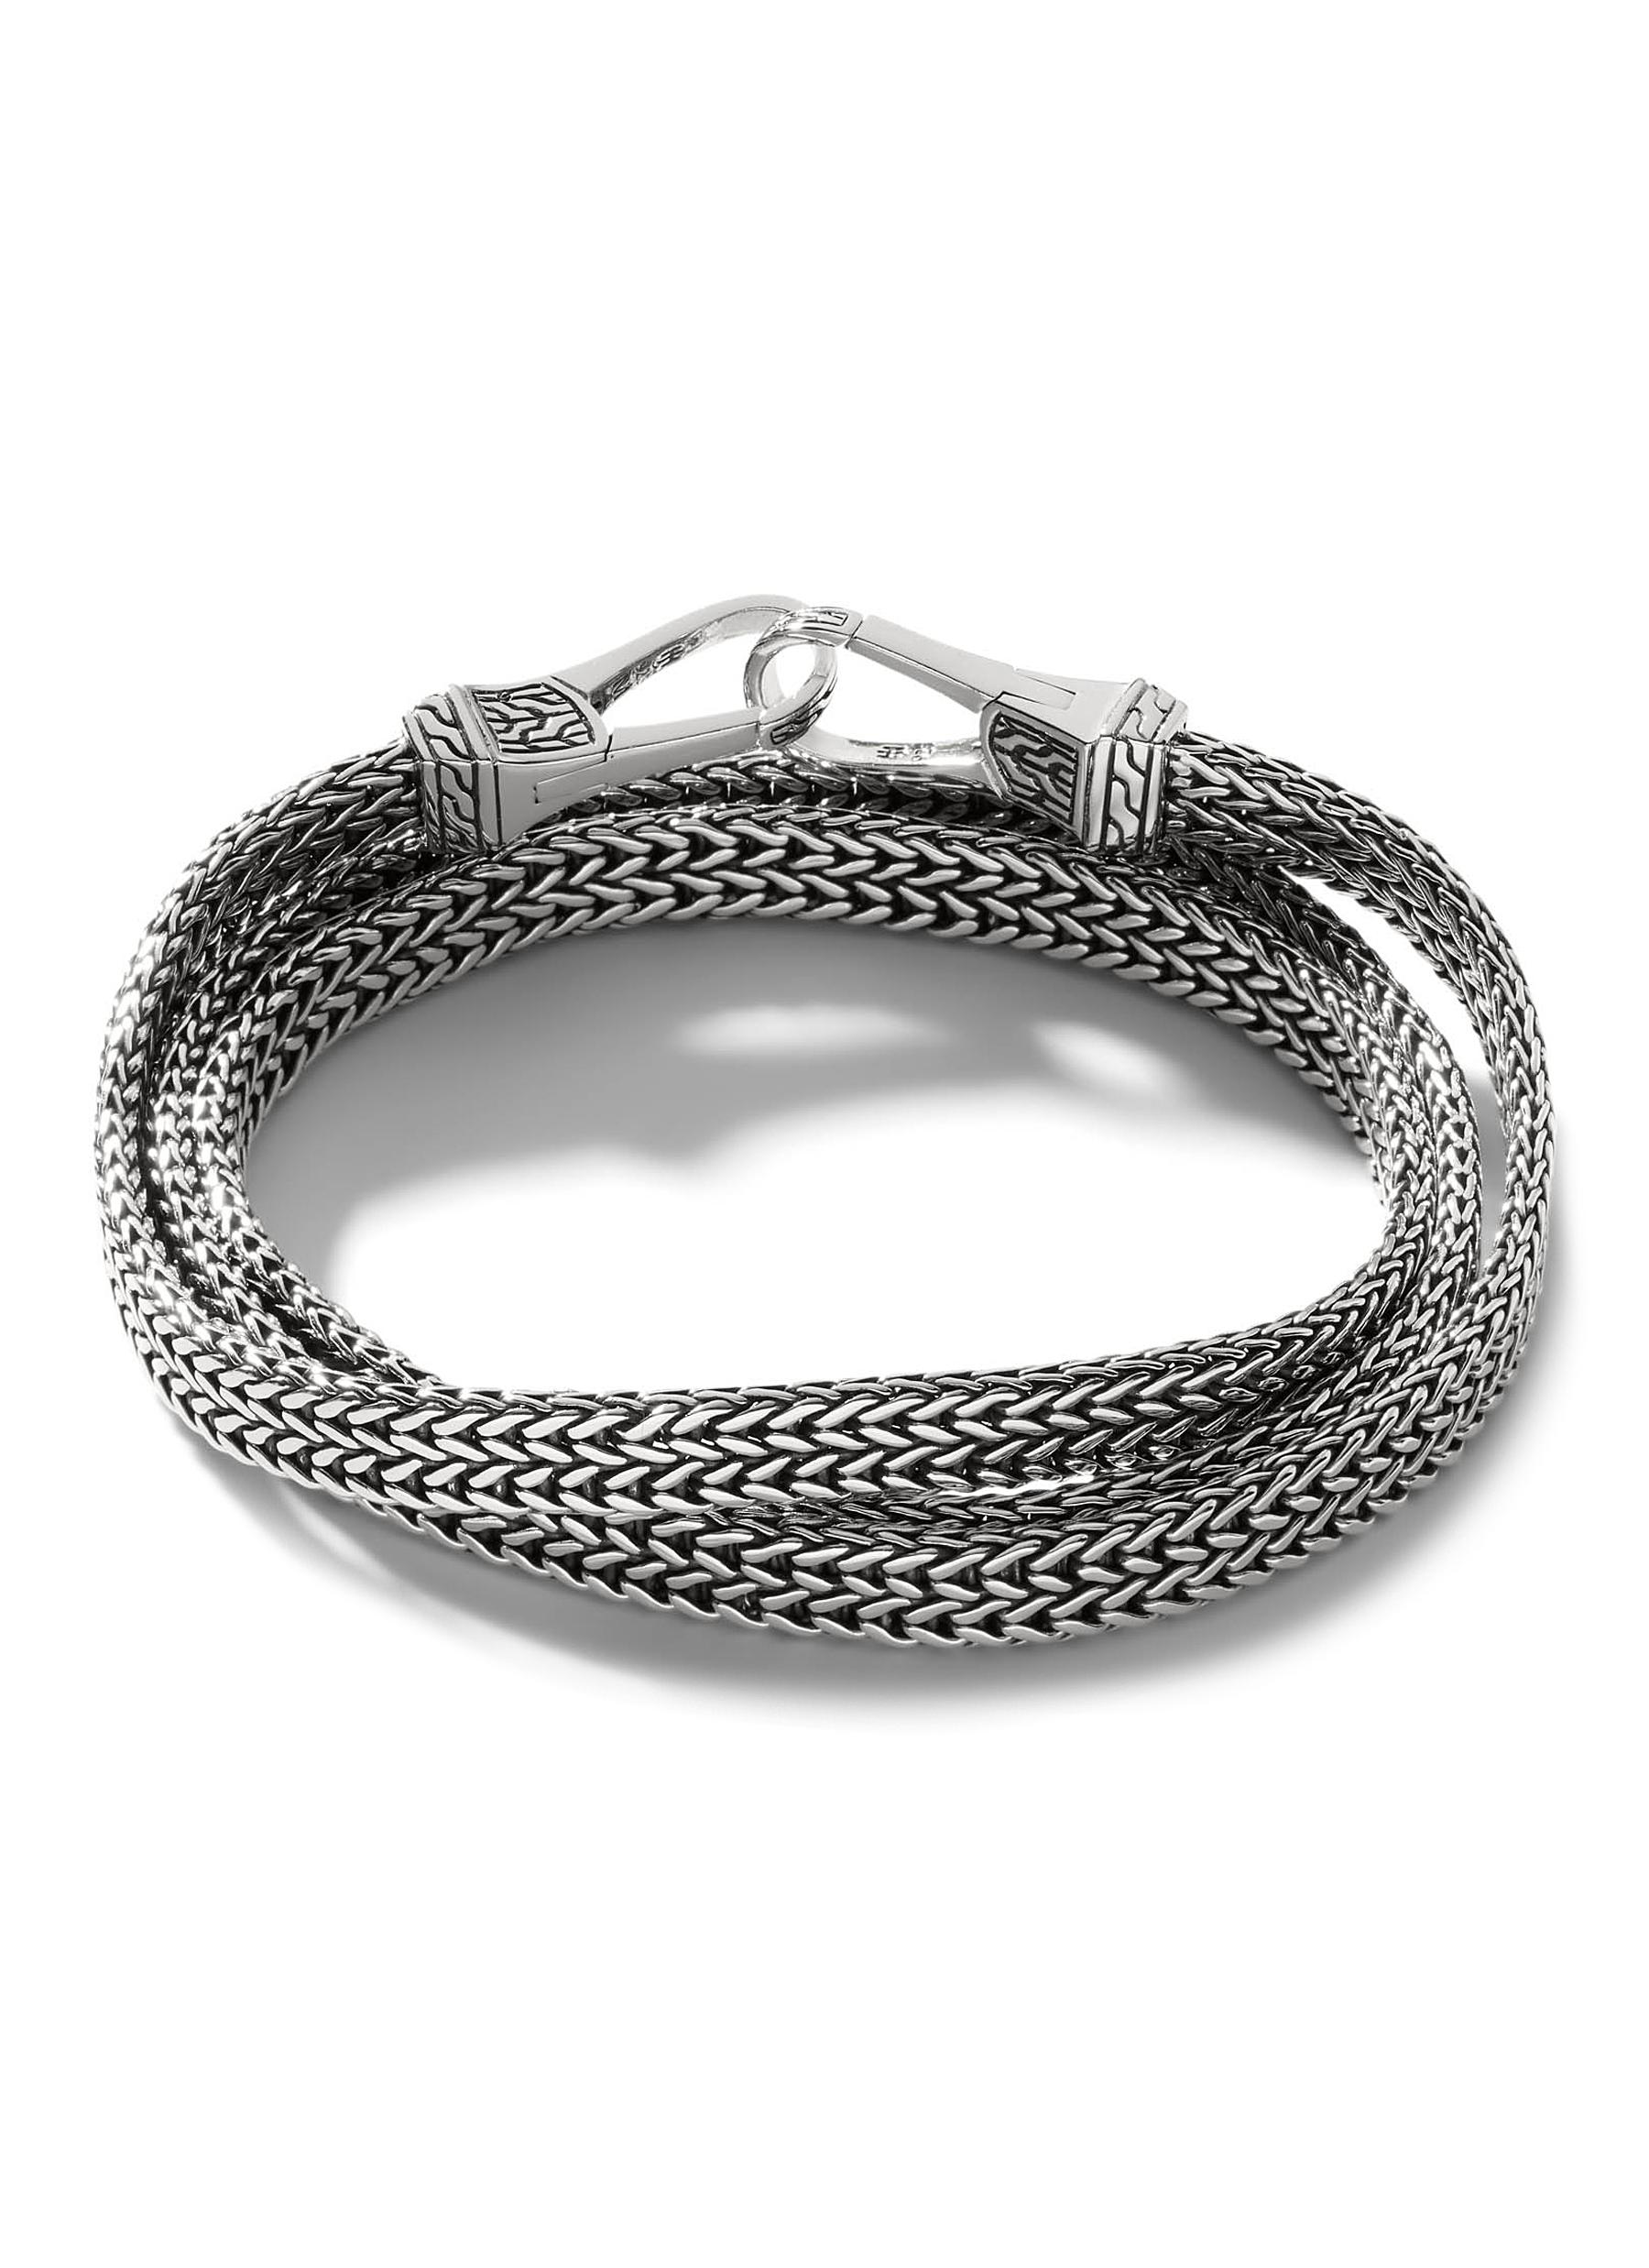 Resultado de imagem para tom hardy bracelet | Mad max paracord bracelet,  Paracord bracelets, Bracelets